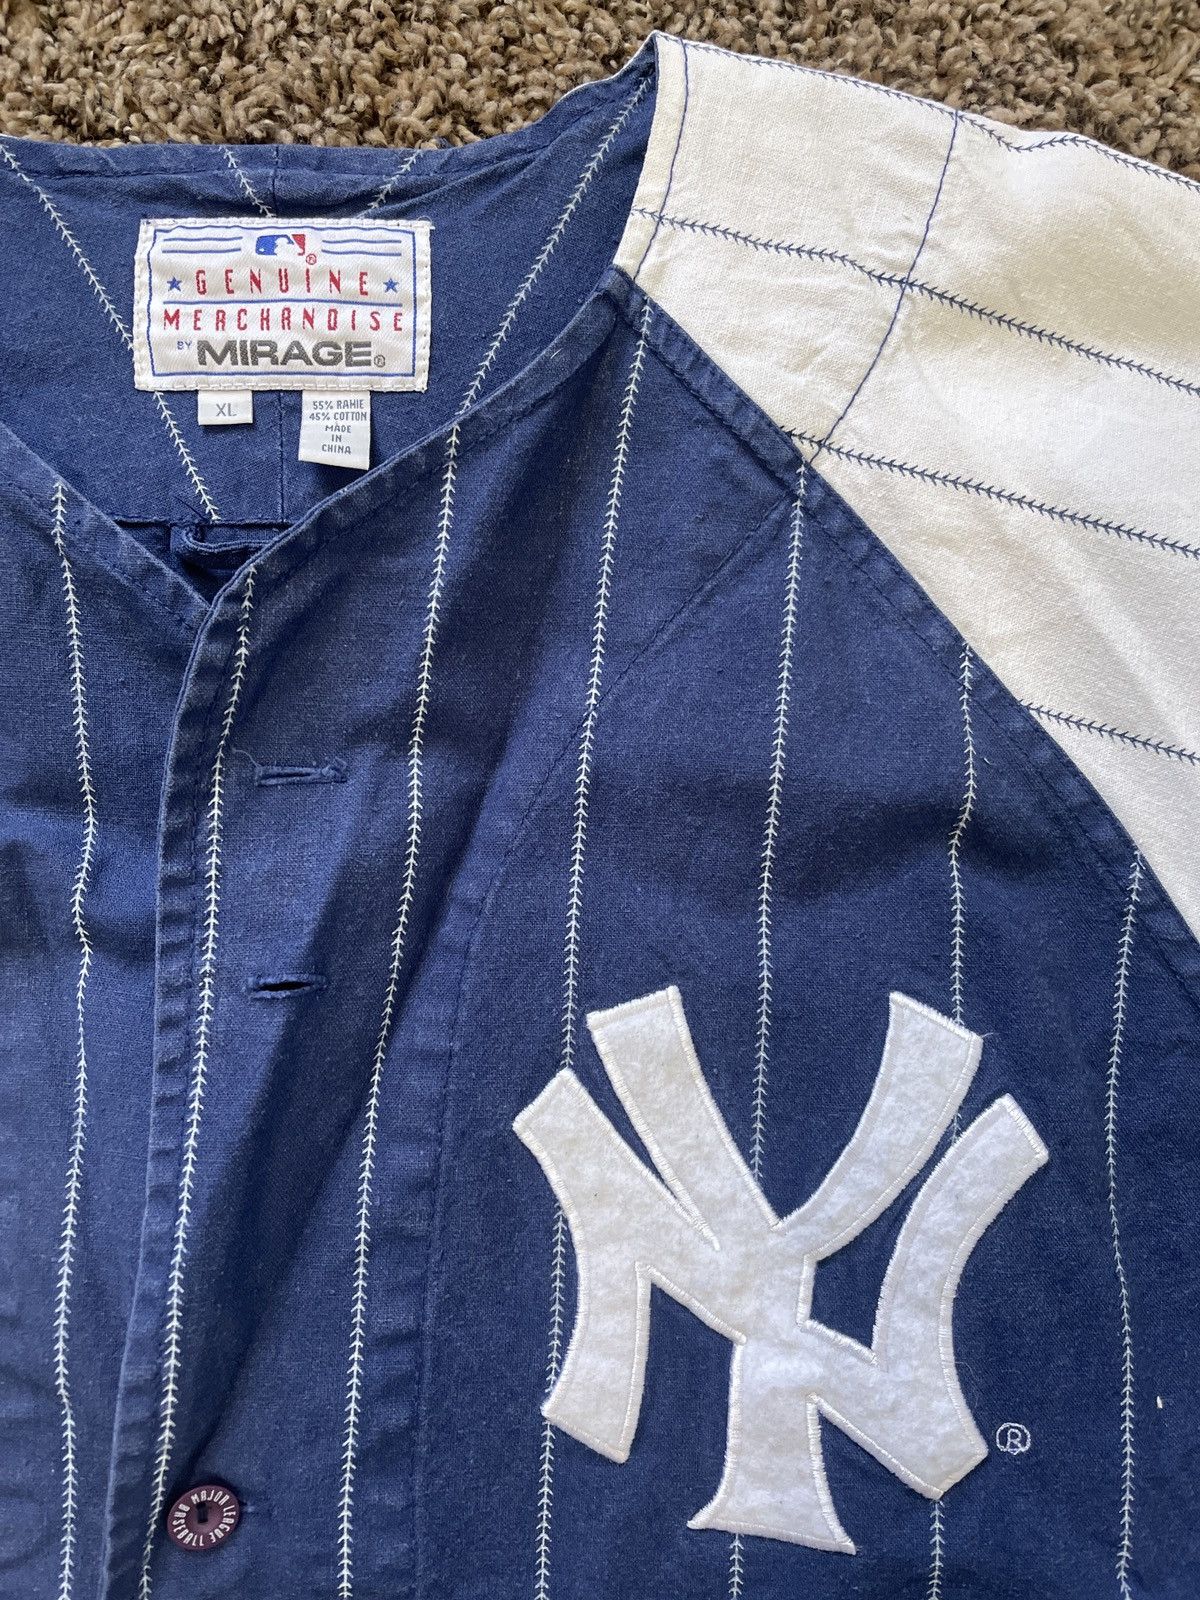 Genuine Merchandise By True Fan Vintage Bernie Williams Pinstripe Yankee Jersey Size US XL / EU 56 / 4 - 3 Thumbnail